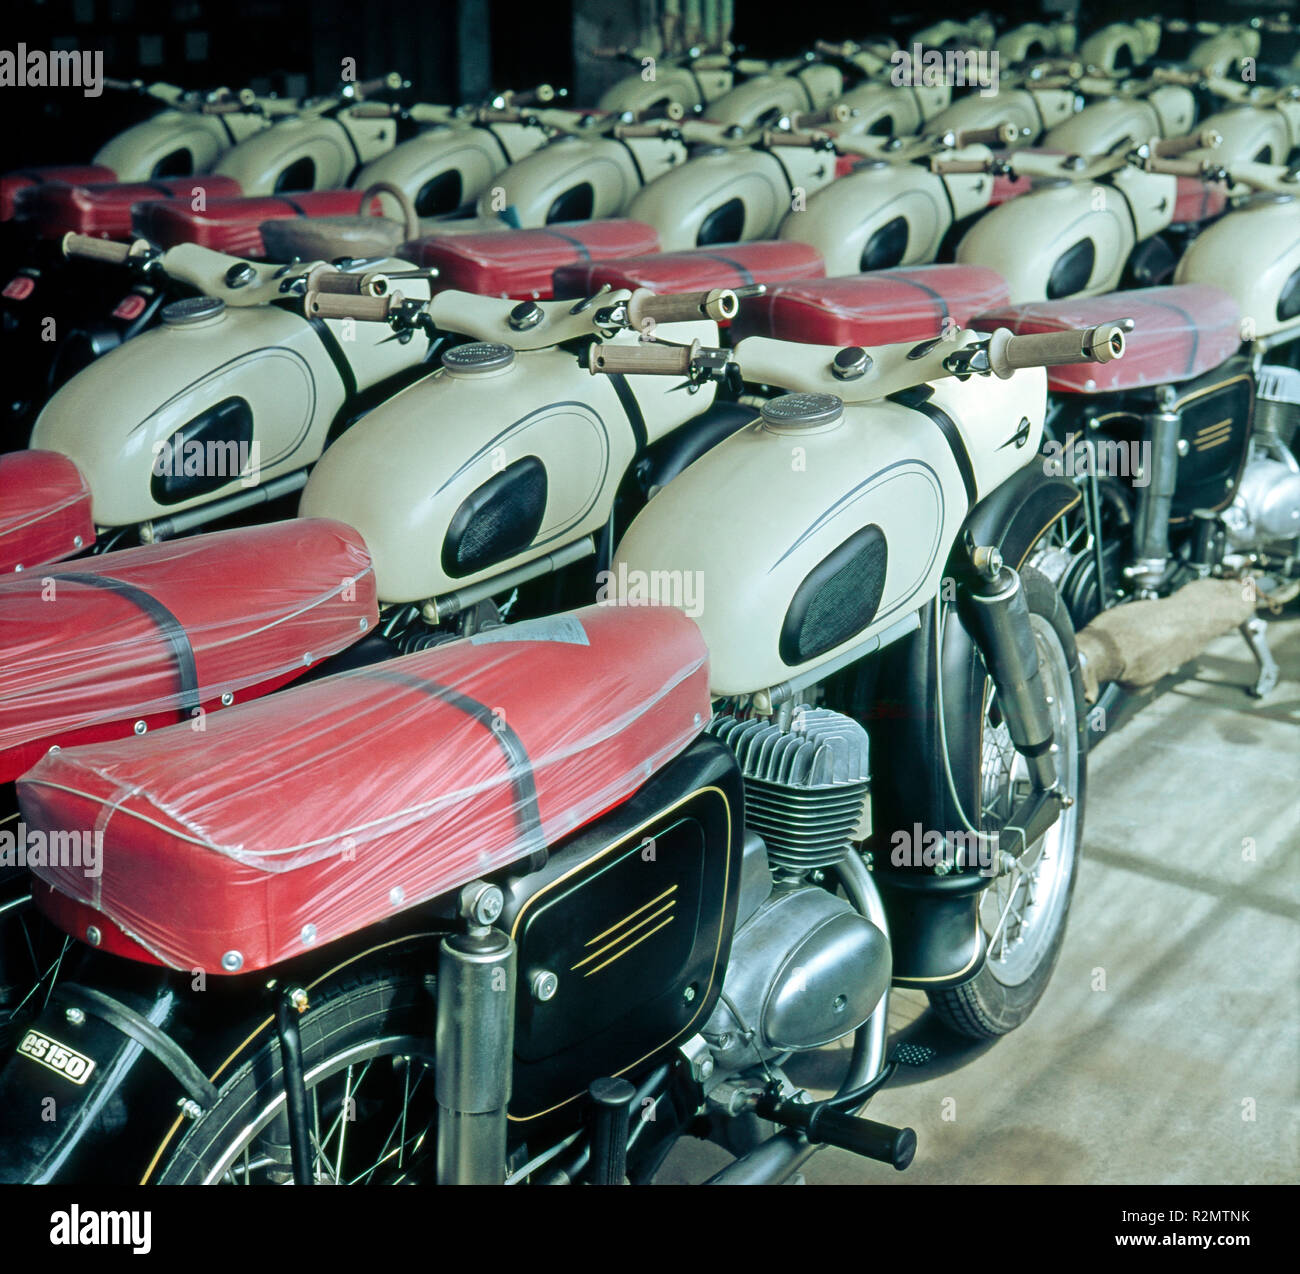 Brandneue MZ Motorräder aus Zschopau, ES 150, aus der DDR-Zeit Stockfoto